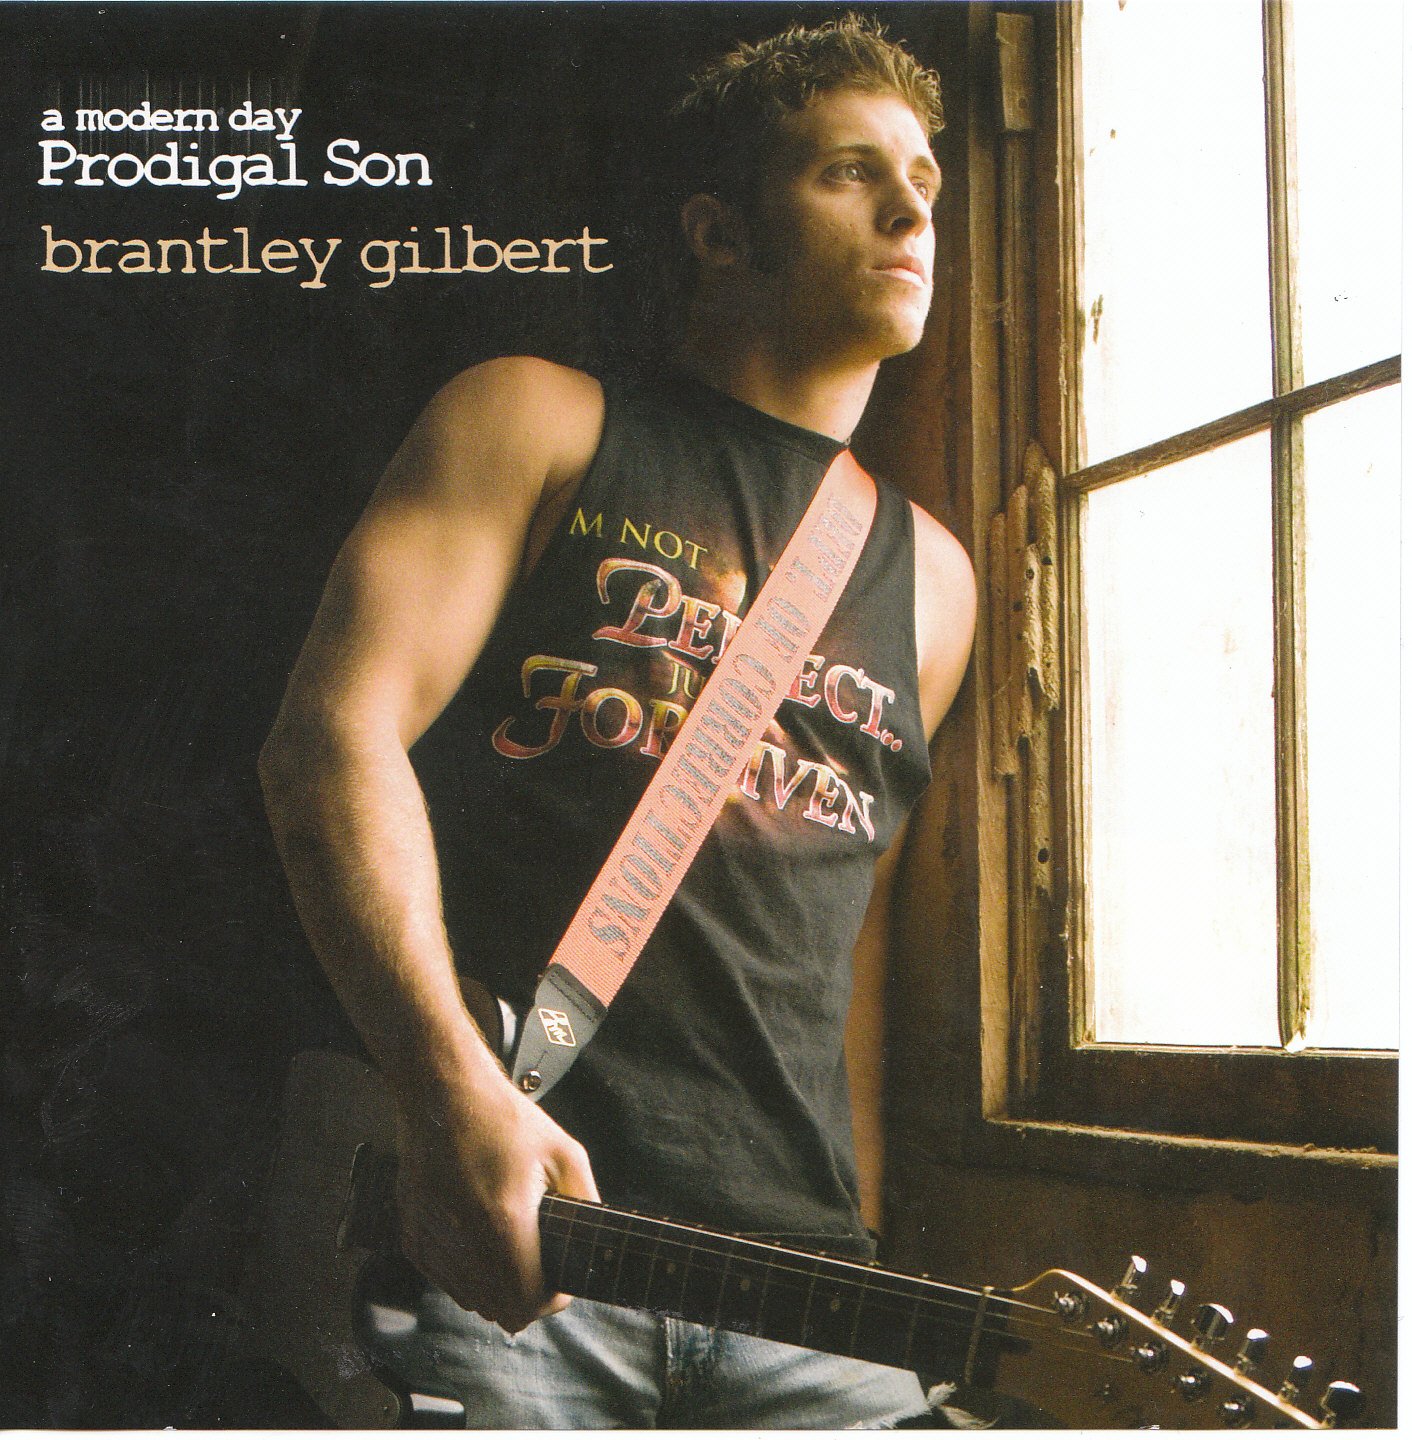 brantley gilbert album download